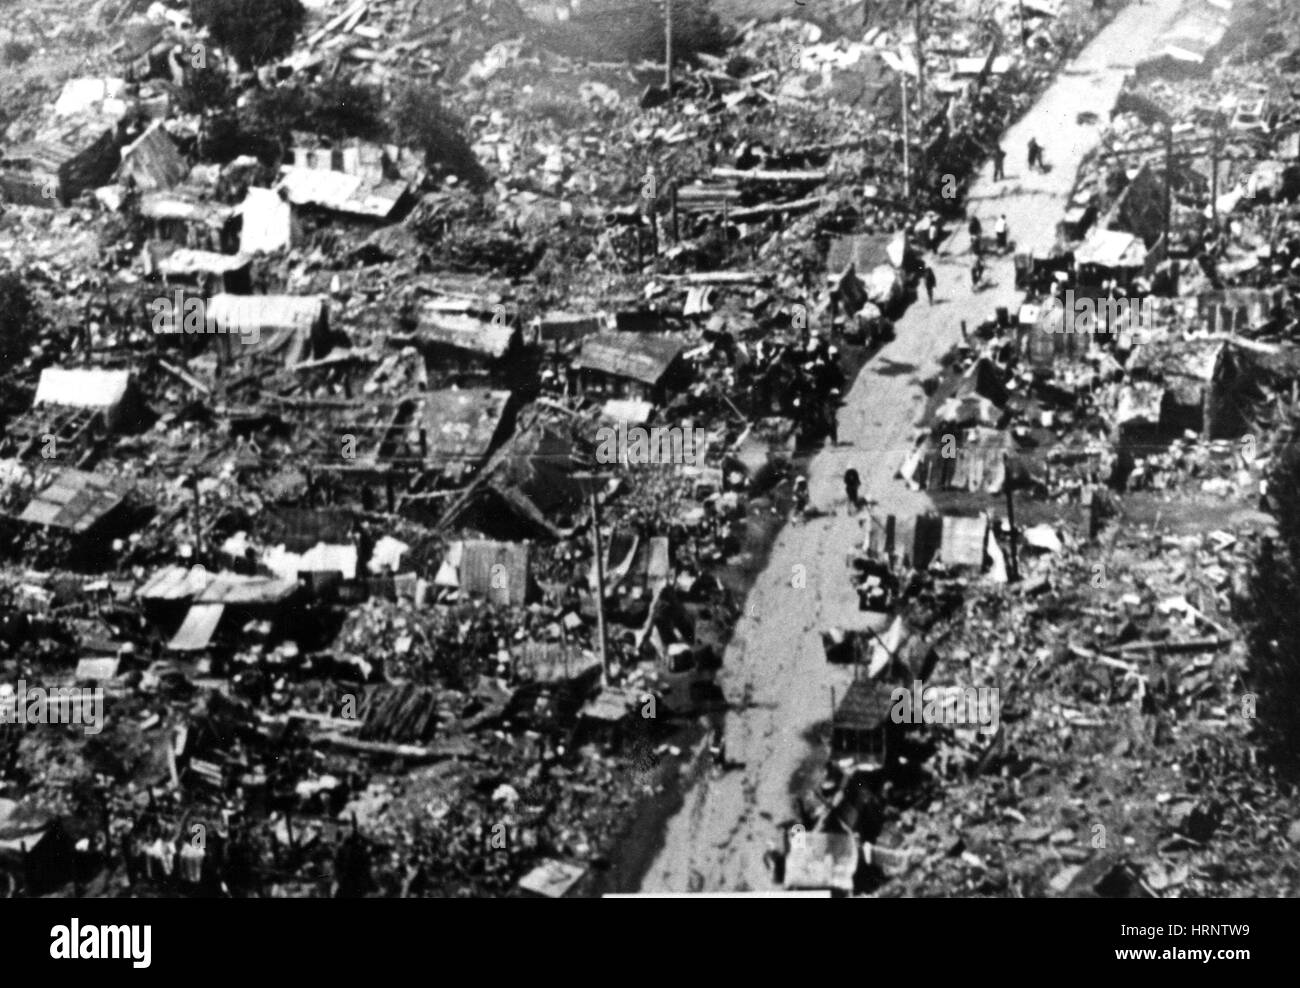 Tangshan Earthquake, 1976 Stock Photo